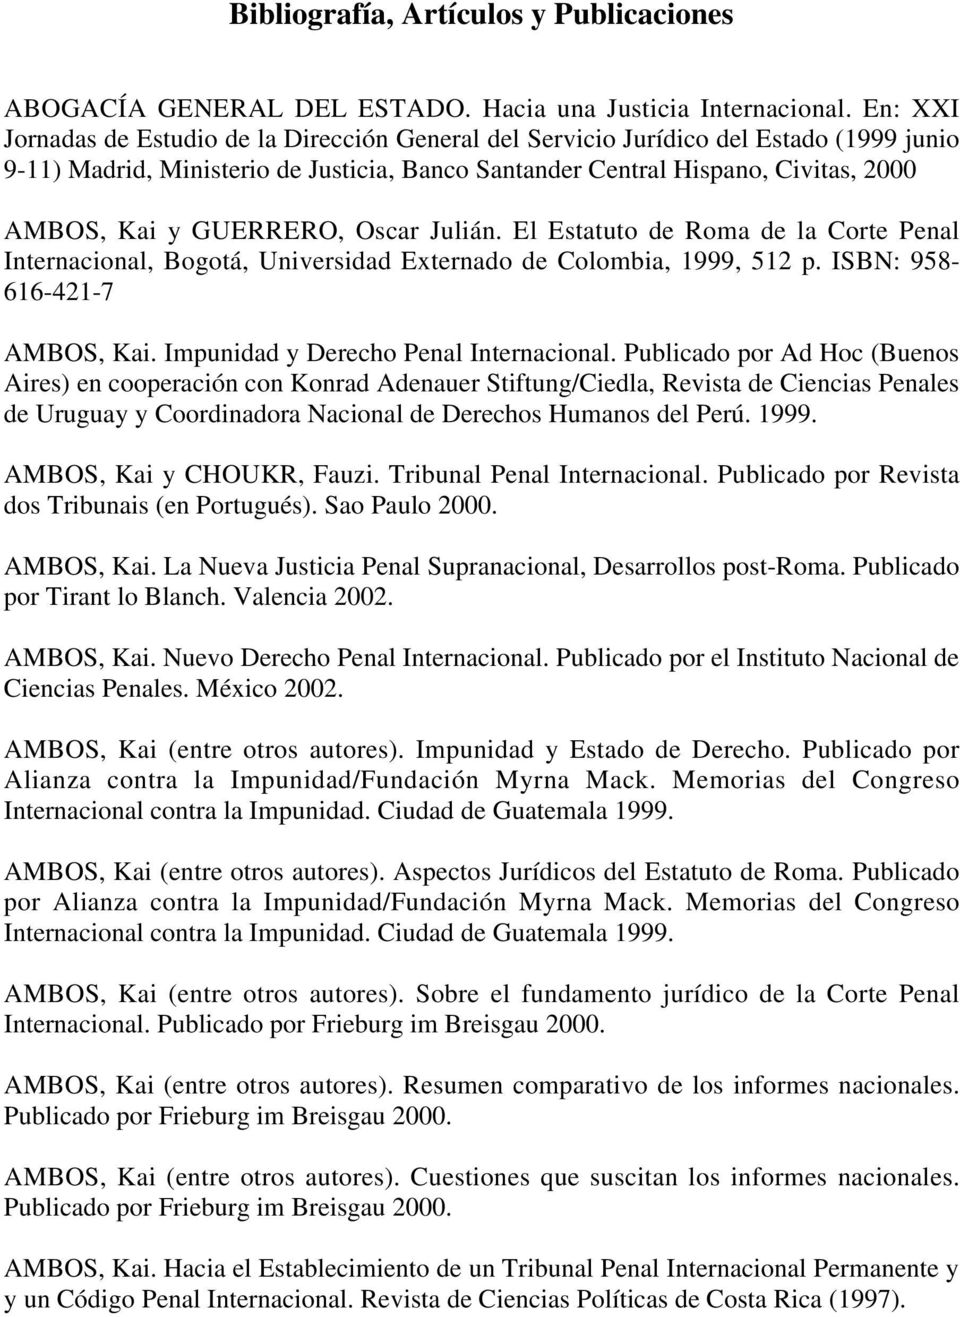 GUERRERO, Oscar Julián. El Estatuto de Roma de la Corte Penal Internacional, Bogotá, Universidad Externado de Colombia, 1999, 512 p. ISBN: 958-616-421-7 AMBOS, Kai.